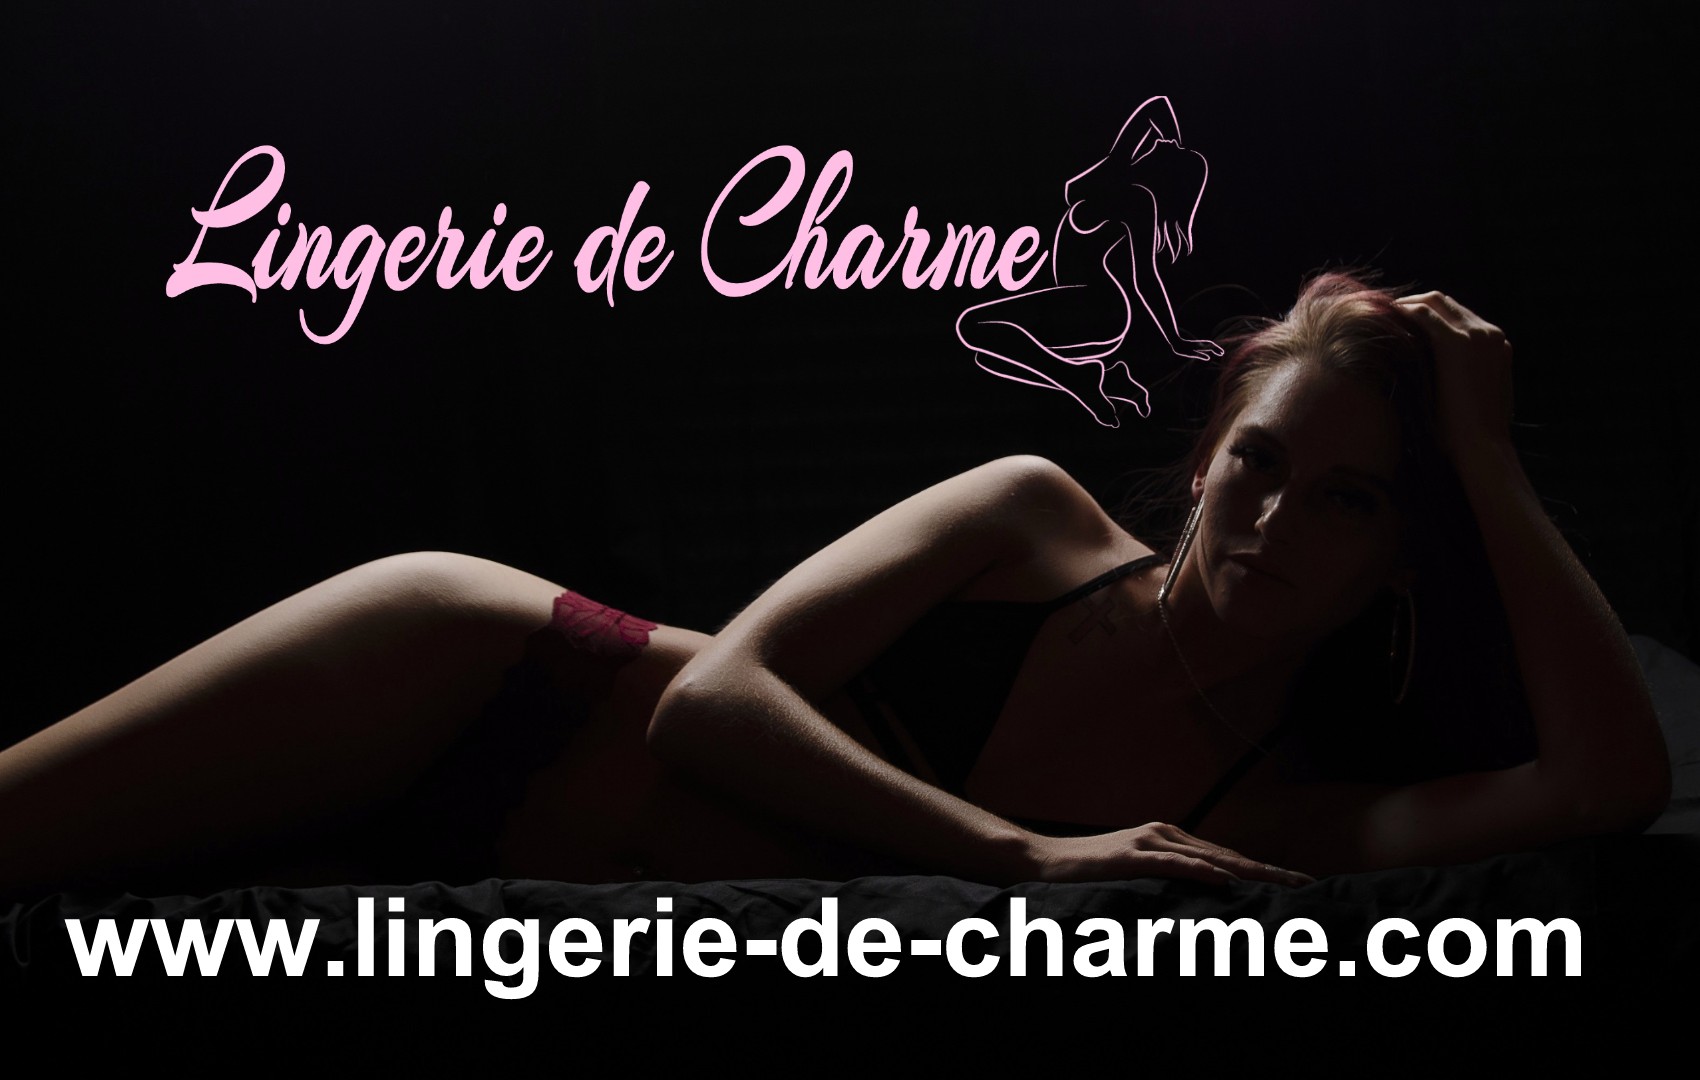 LINGERIE DE CHARME GUIZENGEARD 16 - LINGERIE SEXY GUIZENGEARD 16